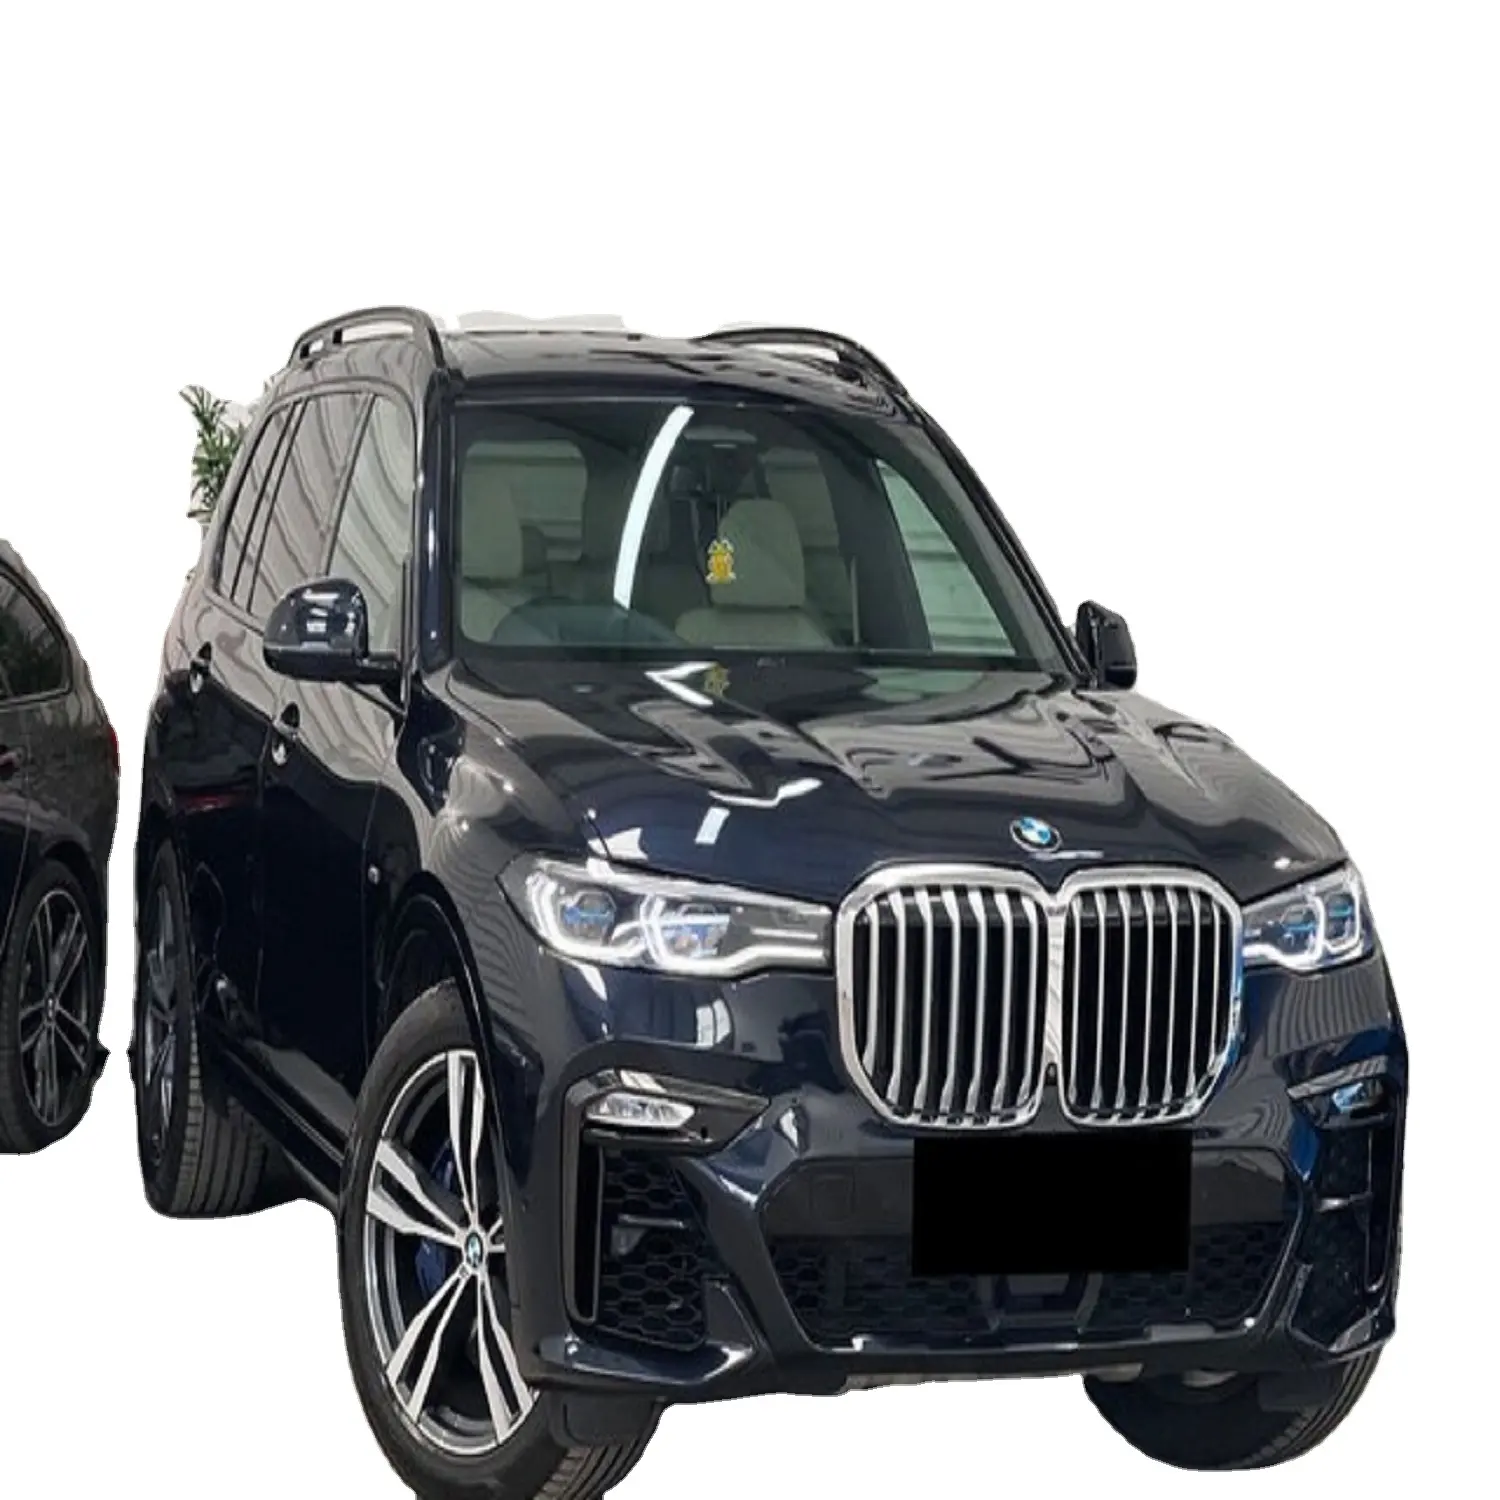 Auto usata 2019 BMW X7 benzina automatica/CLASSIC GERMANY auto BMW usate in vendita